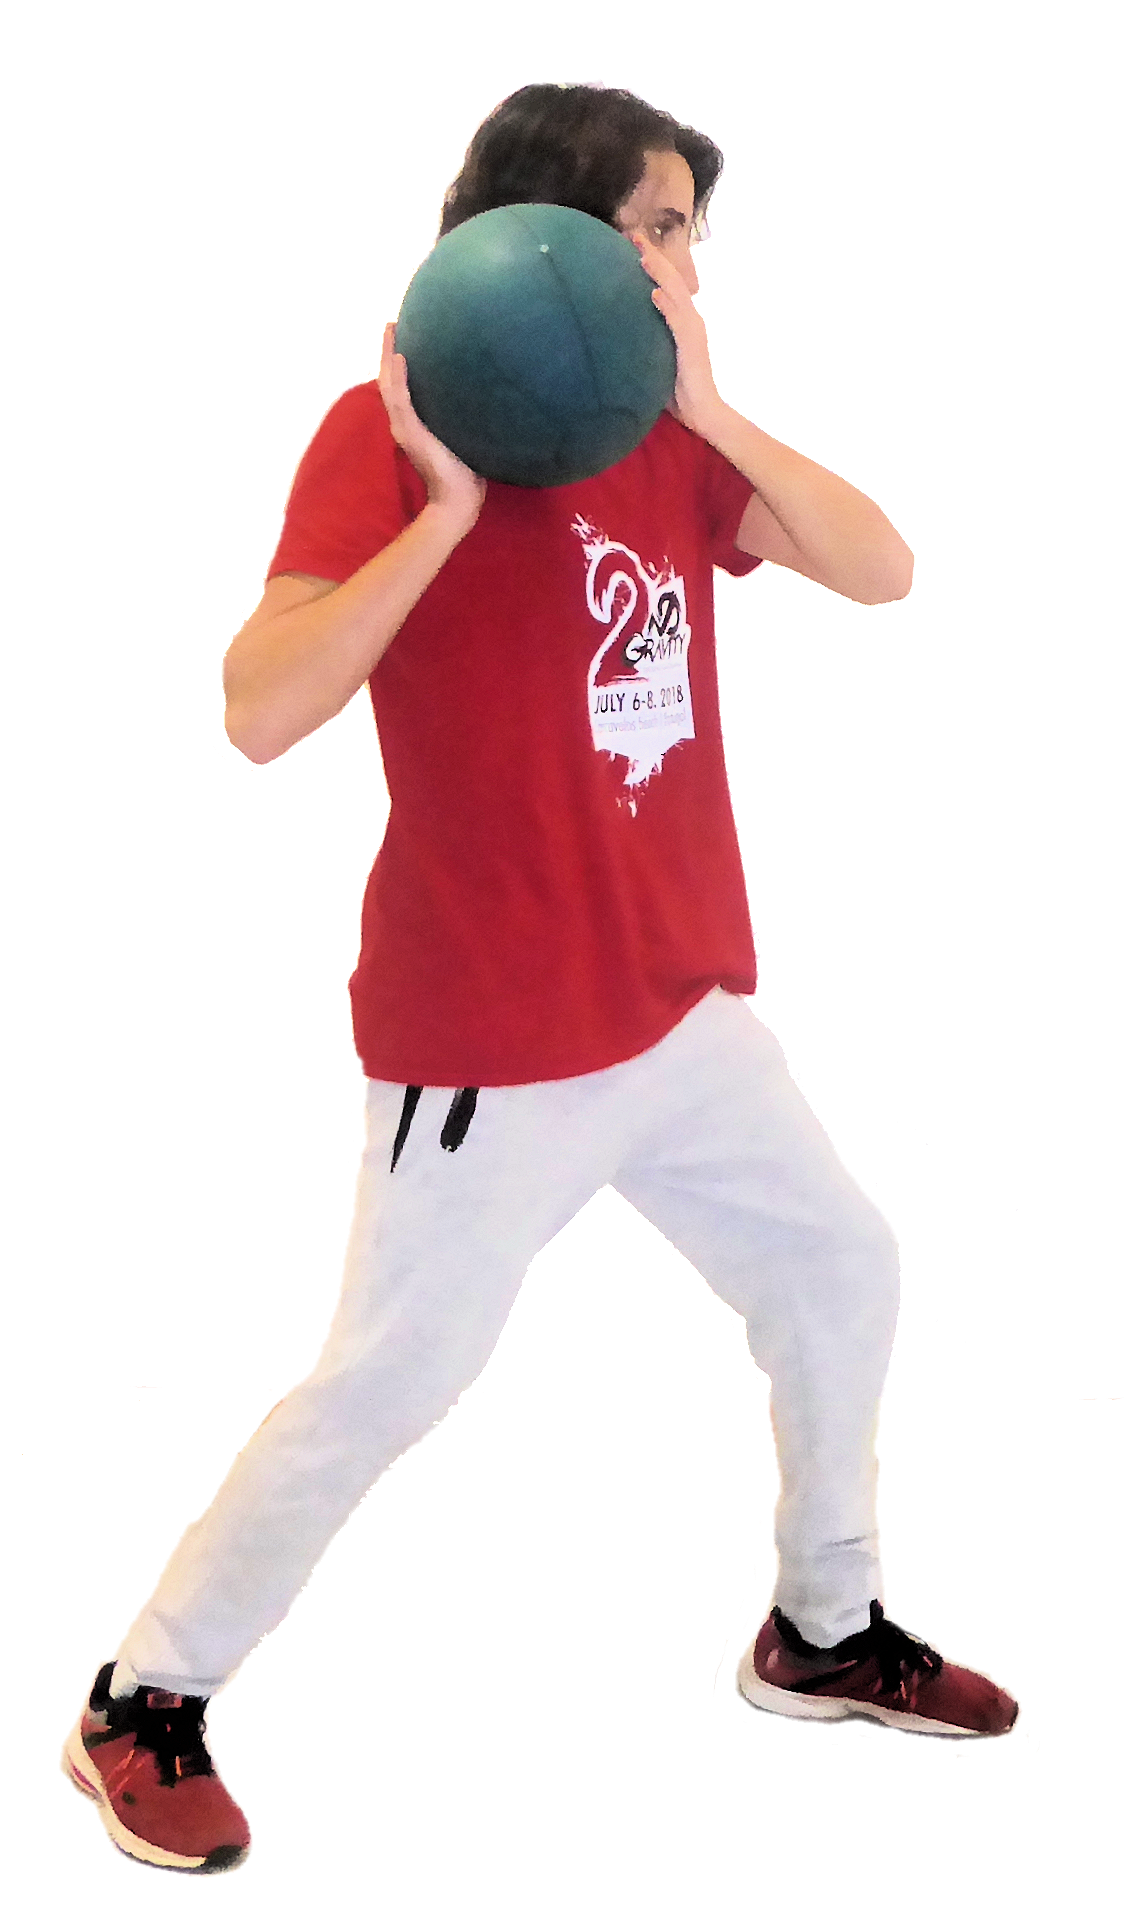 Medicine ball throw